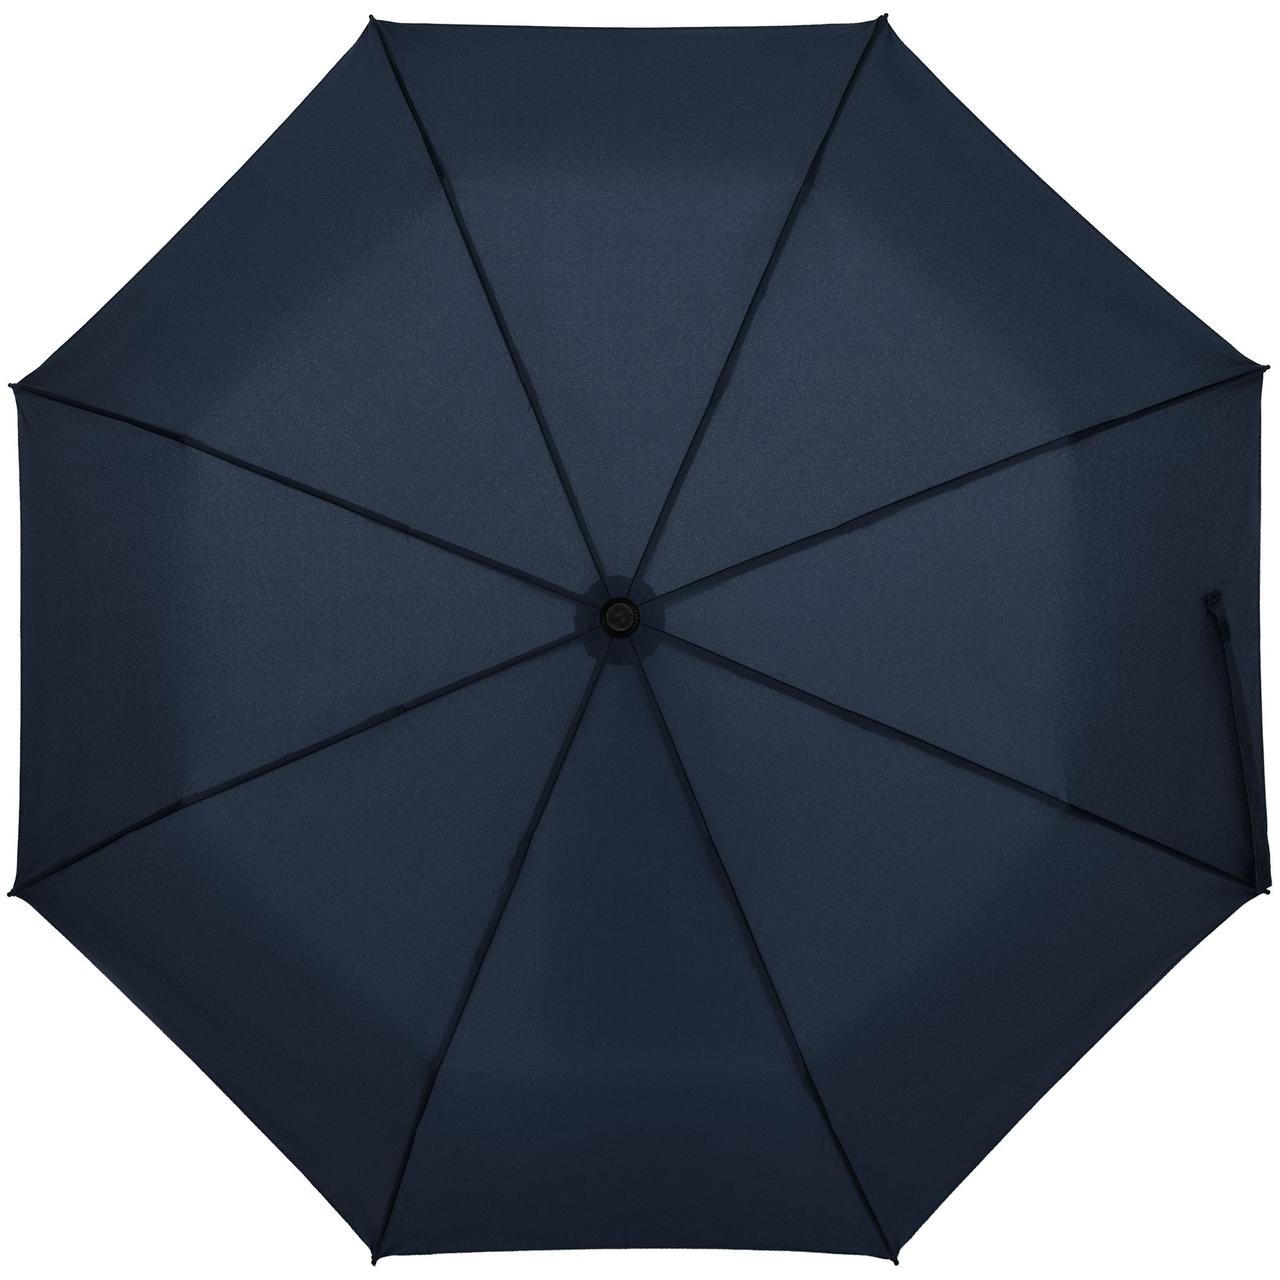 Зонт складной Clevis с ручкой-карабином, темно-синий (артикул 10992.40), фото 1